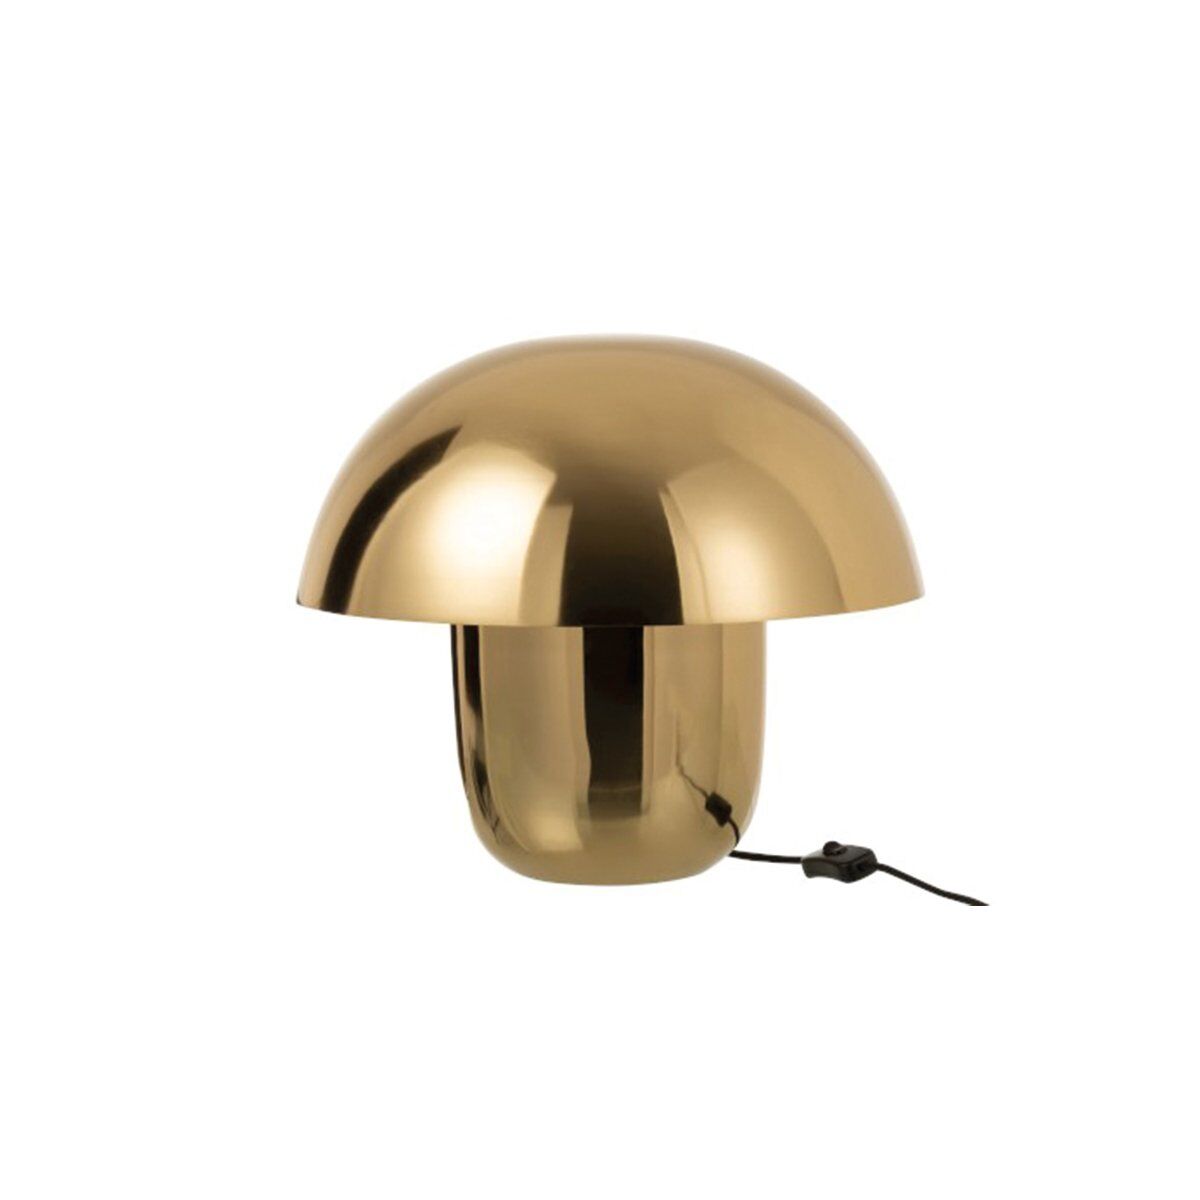 Meubles & Design Lampe design champignon métal doré Or 40x40x40cm